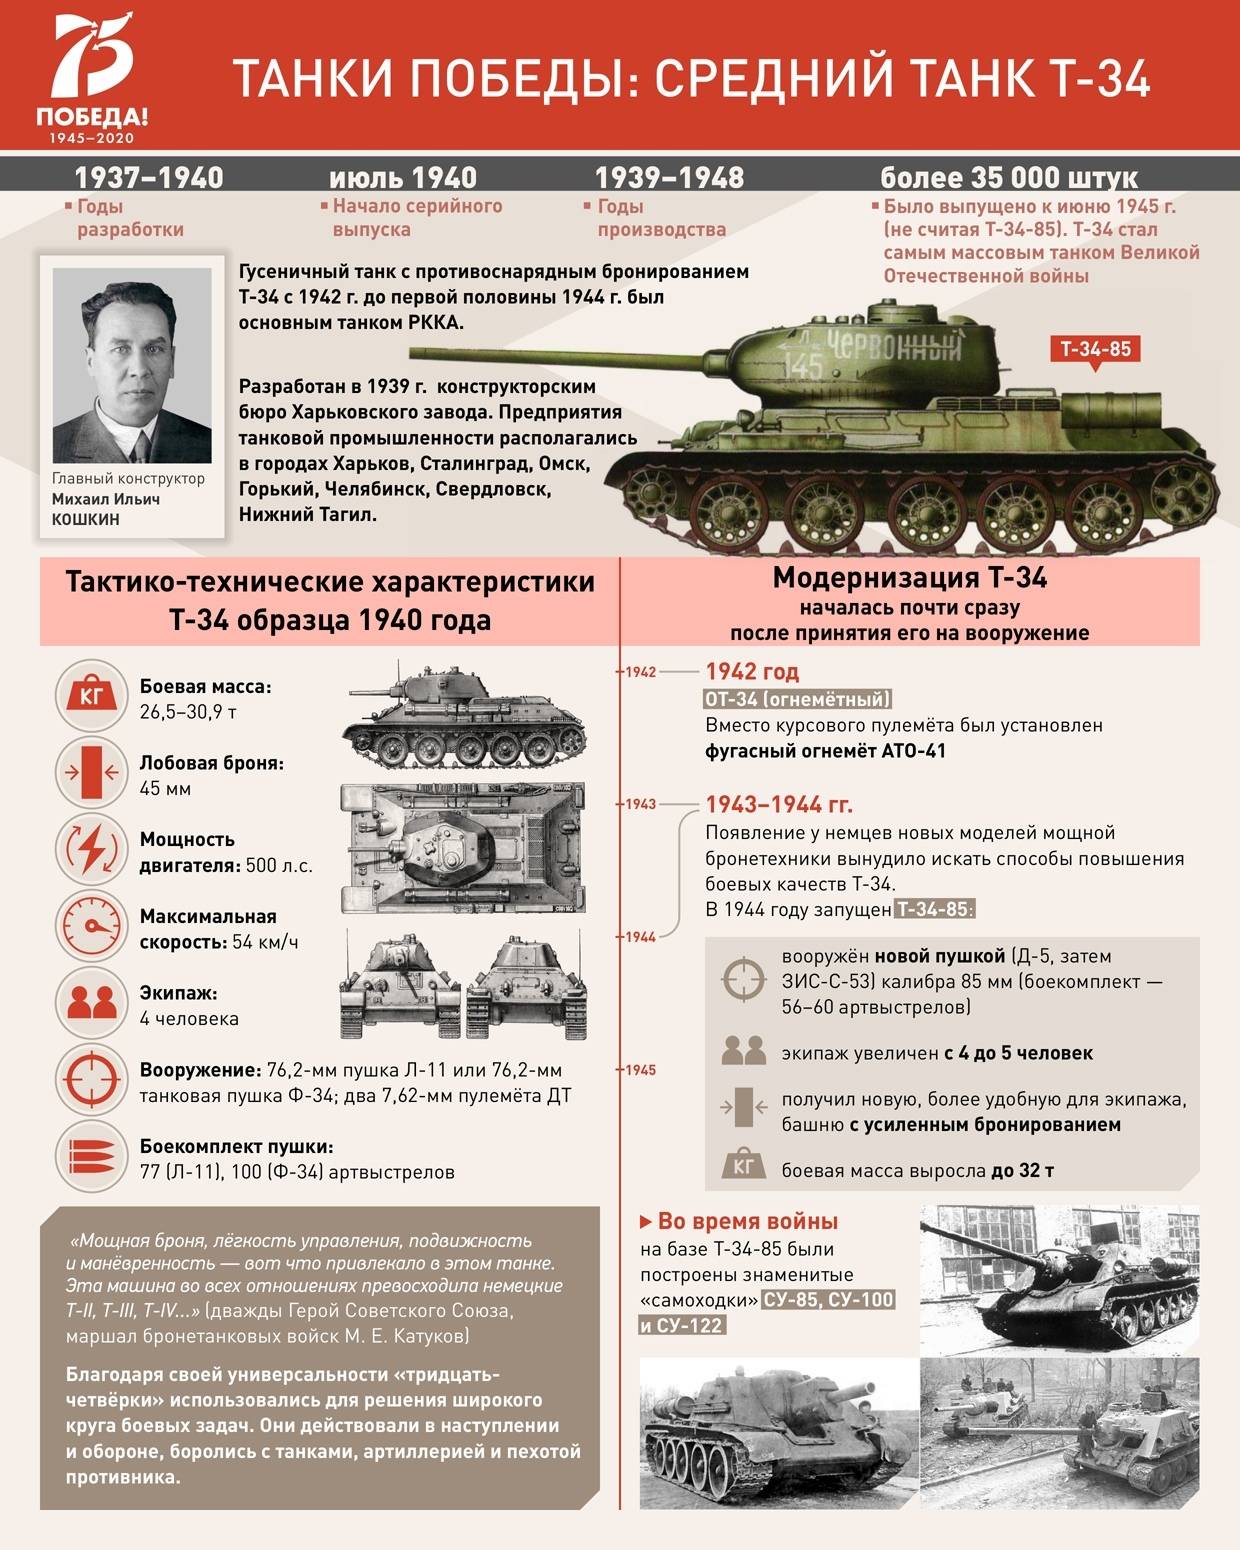 Т-34 – лучший средний танк второй мировой войны